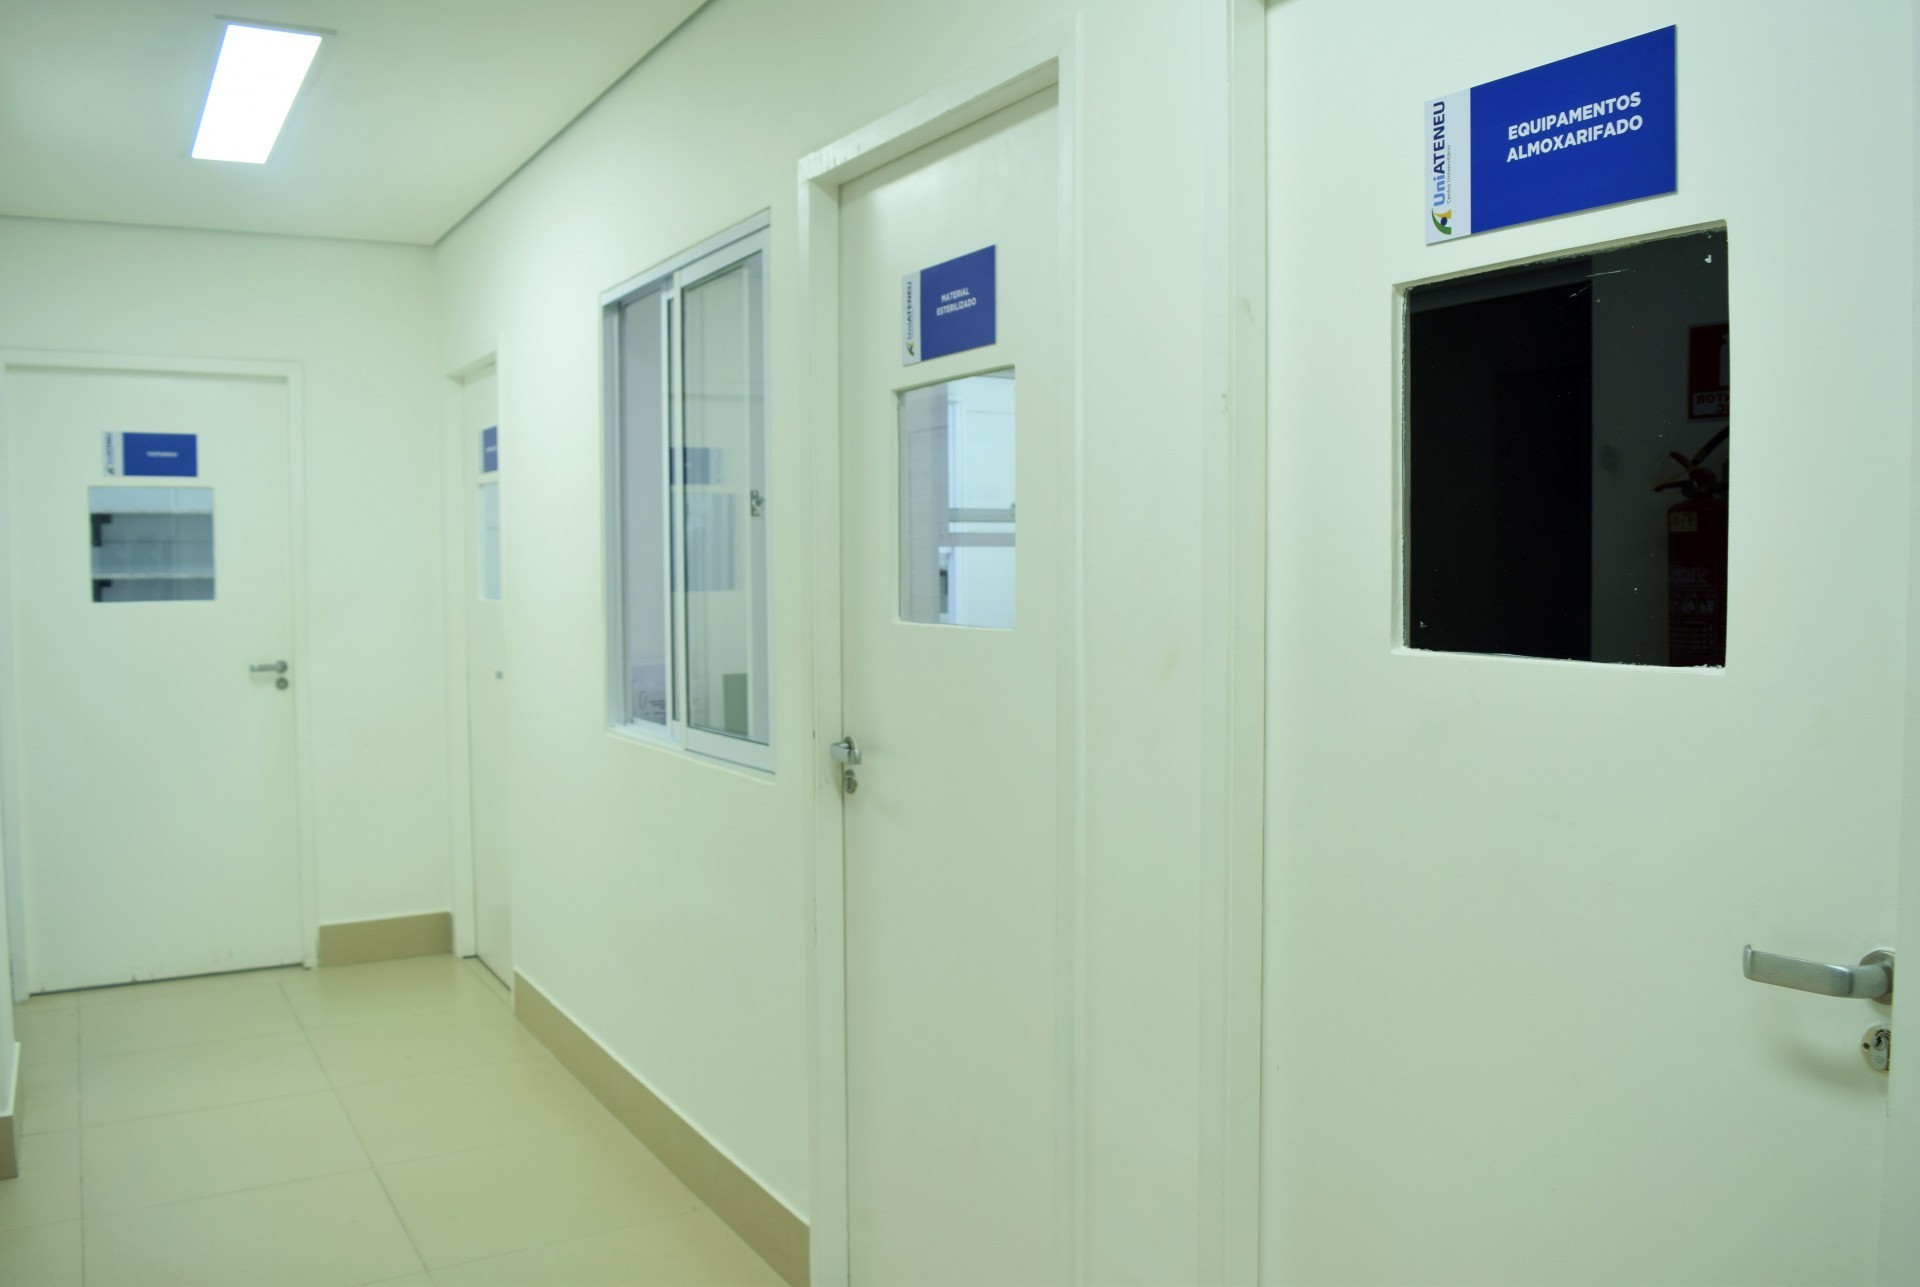 O equipamento dispõe de uma estrutura de apoio para as práticas, como sala de raio X periapcal, farmácia, estação de imagens, sala de expurgo entre outros ambientes